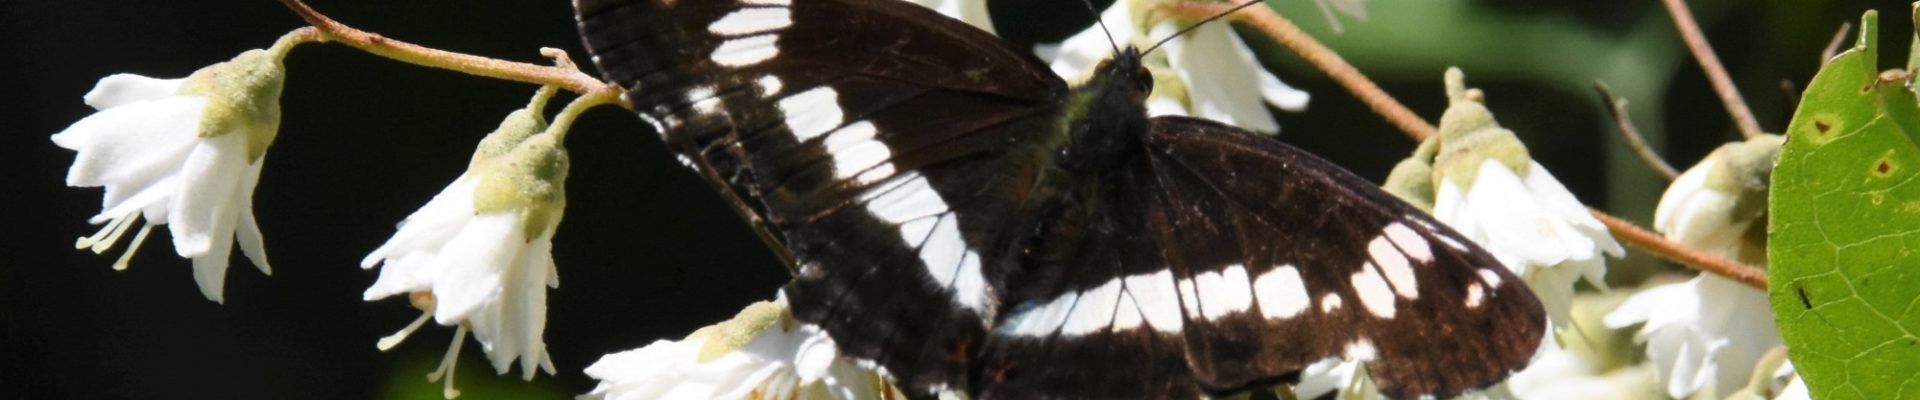 Zelden in Drenthe gezien: Kleine ijsvogelvlinder